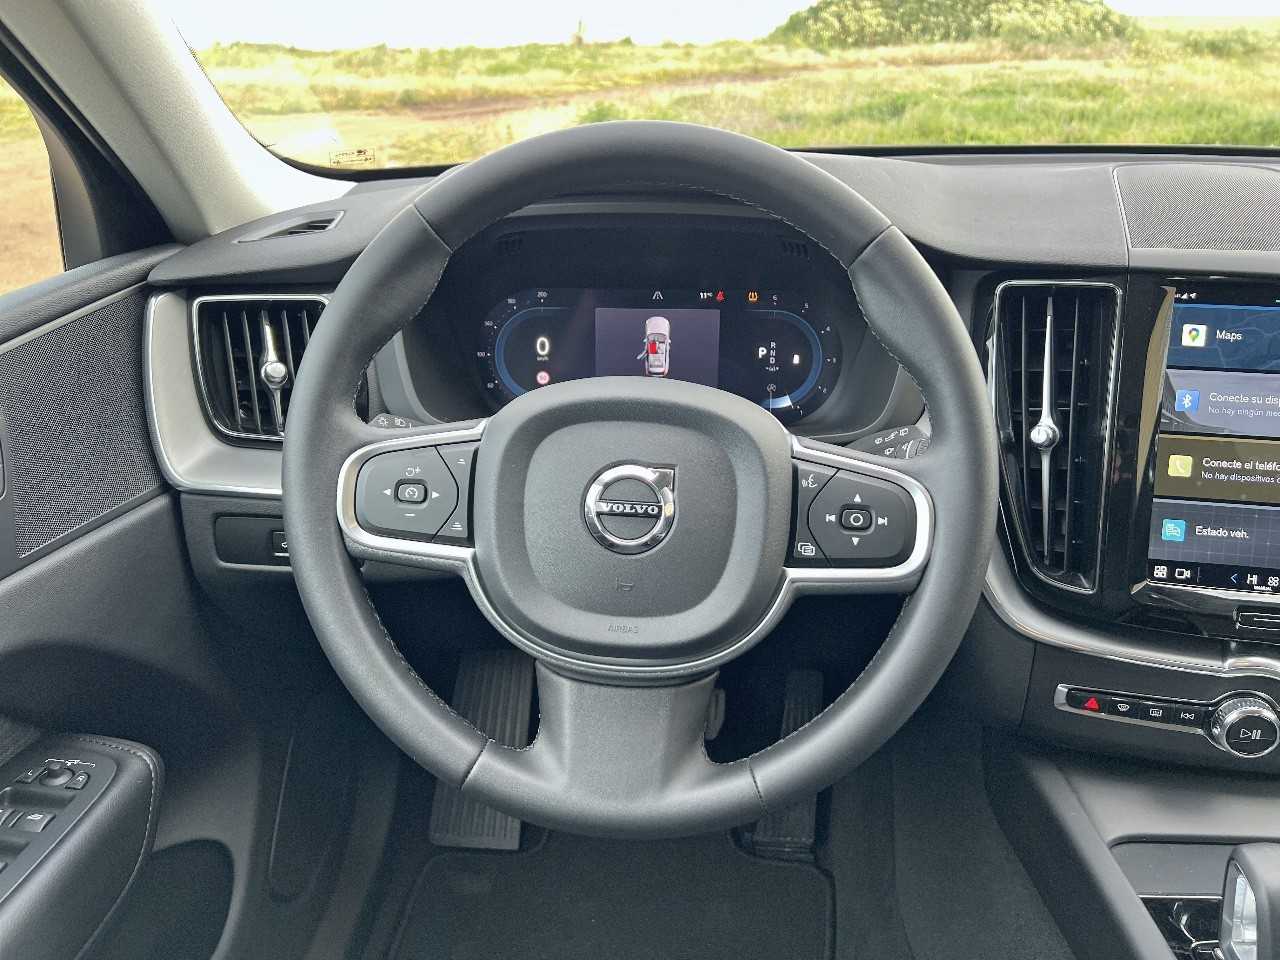 Volvo  XC60 Core, B4 (diesel), Diésel